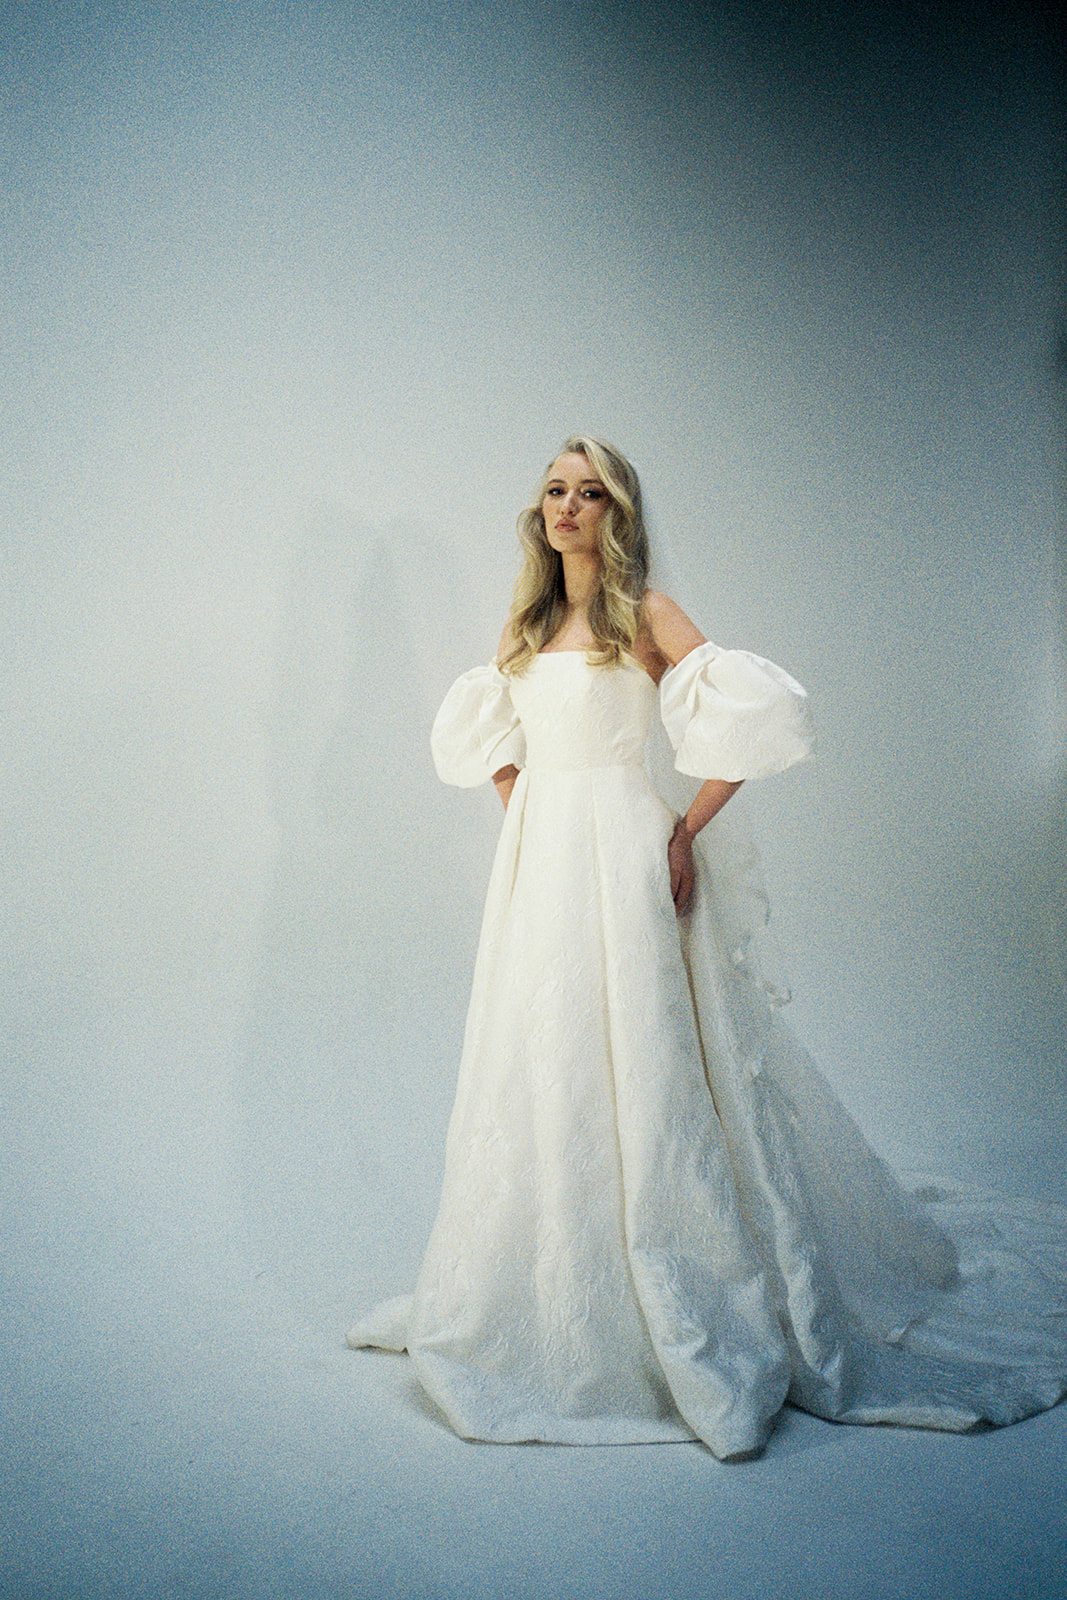 uk fashion bridal film photographer scotland 35mm